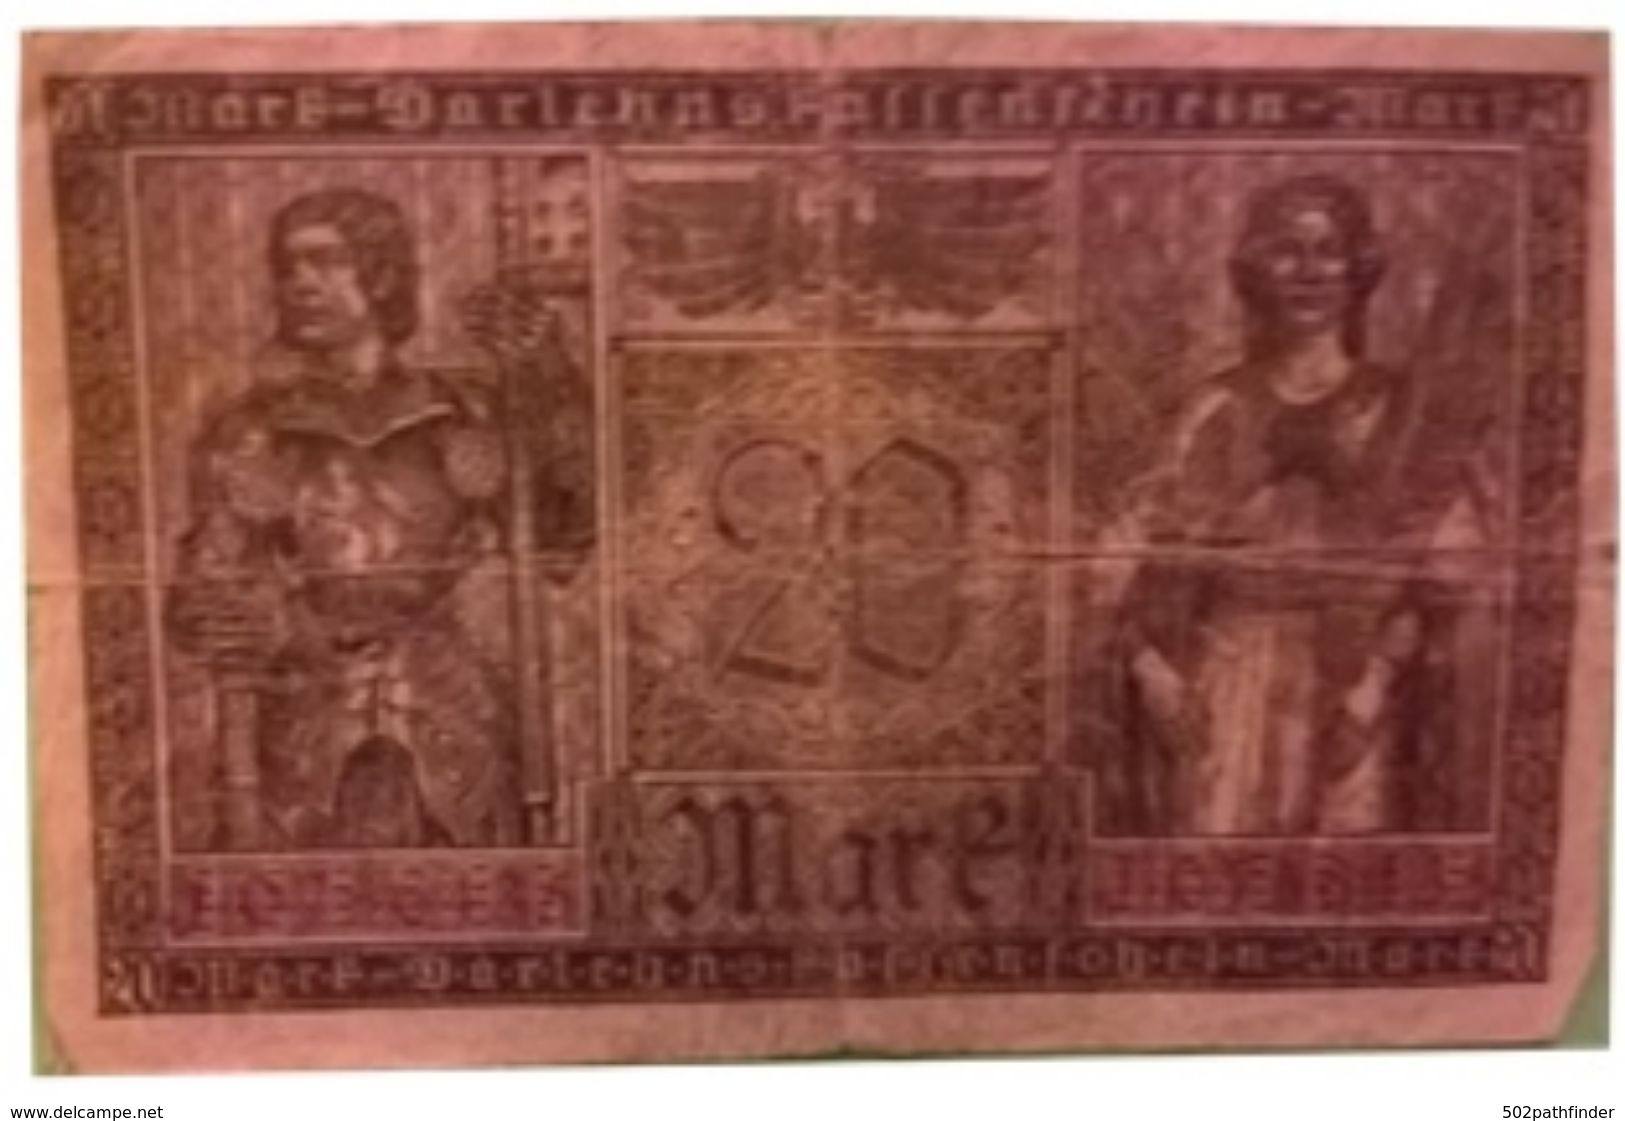 20 Zwanzig Mark Darlehnsfassenschein J3651431 Berlin 20/2/1918 Reichsschuldenverwaltung P.17 - 20 Mark